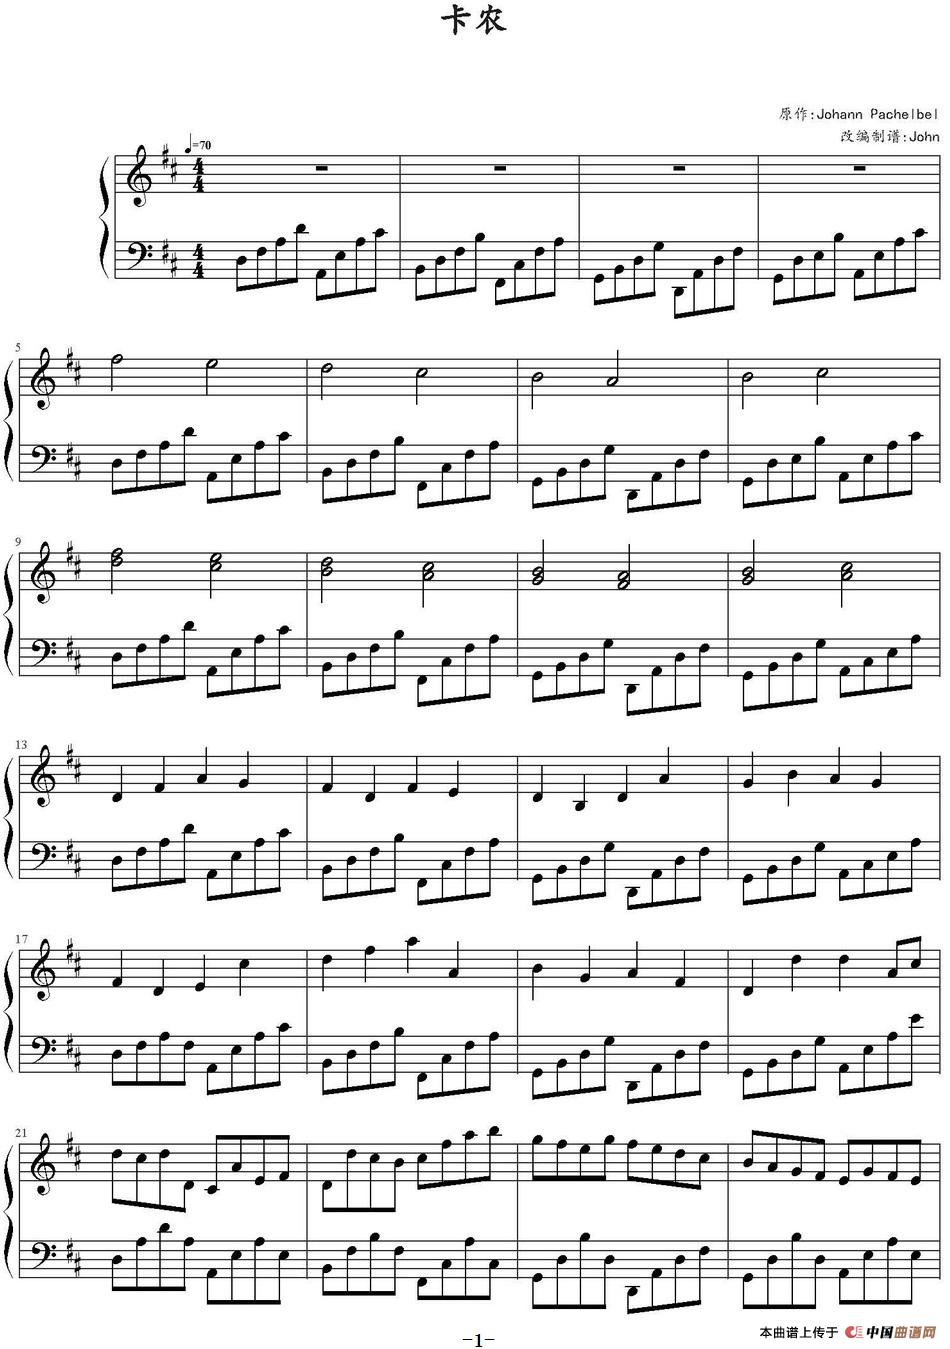 《卡农》钢琴曲谱图分享